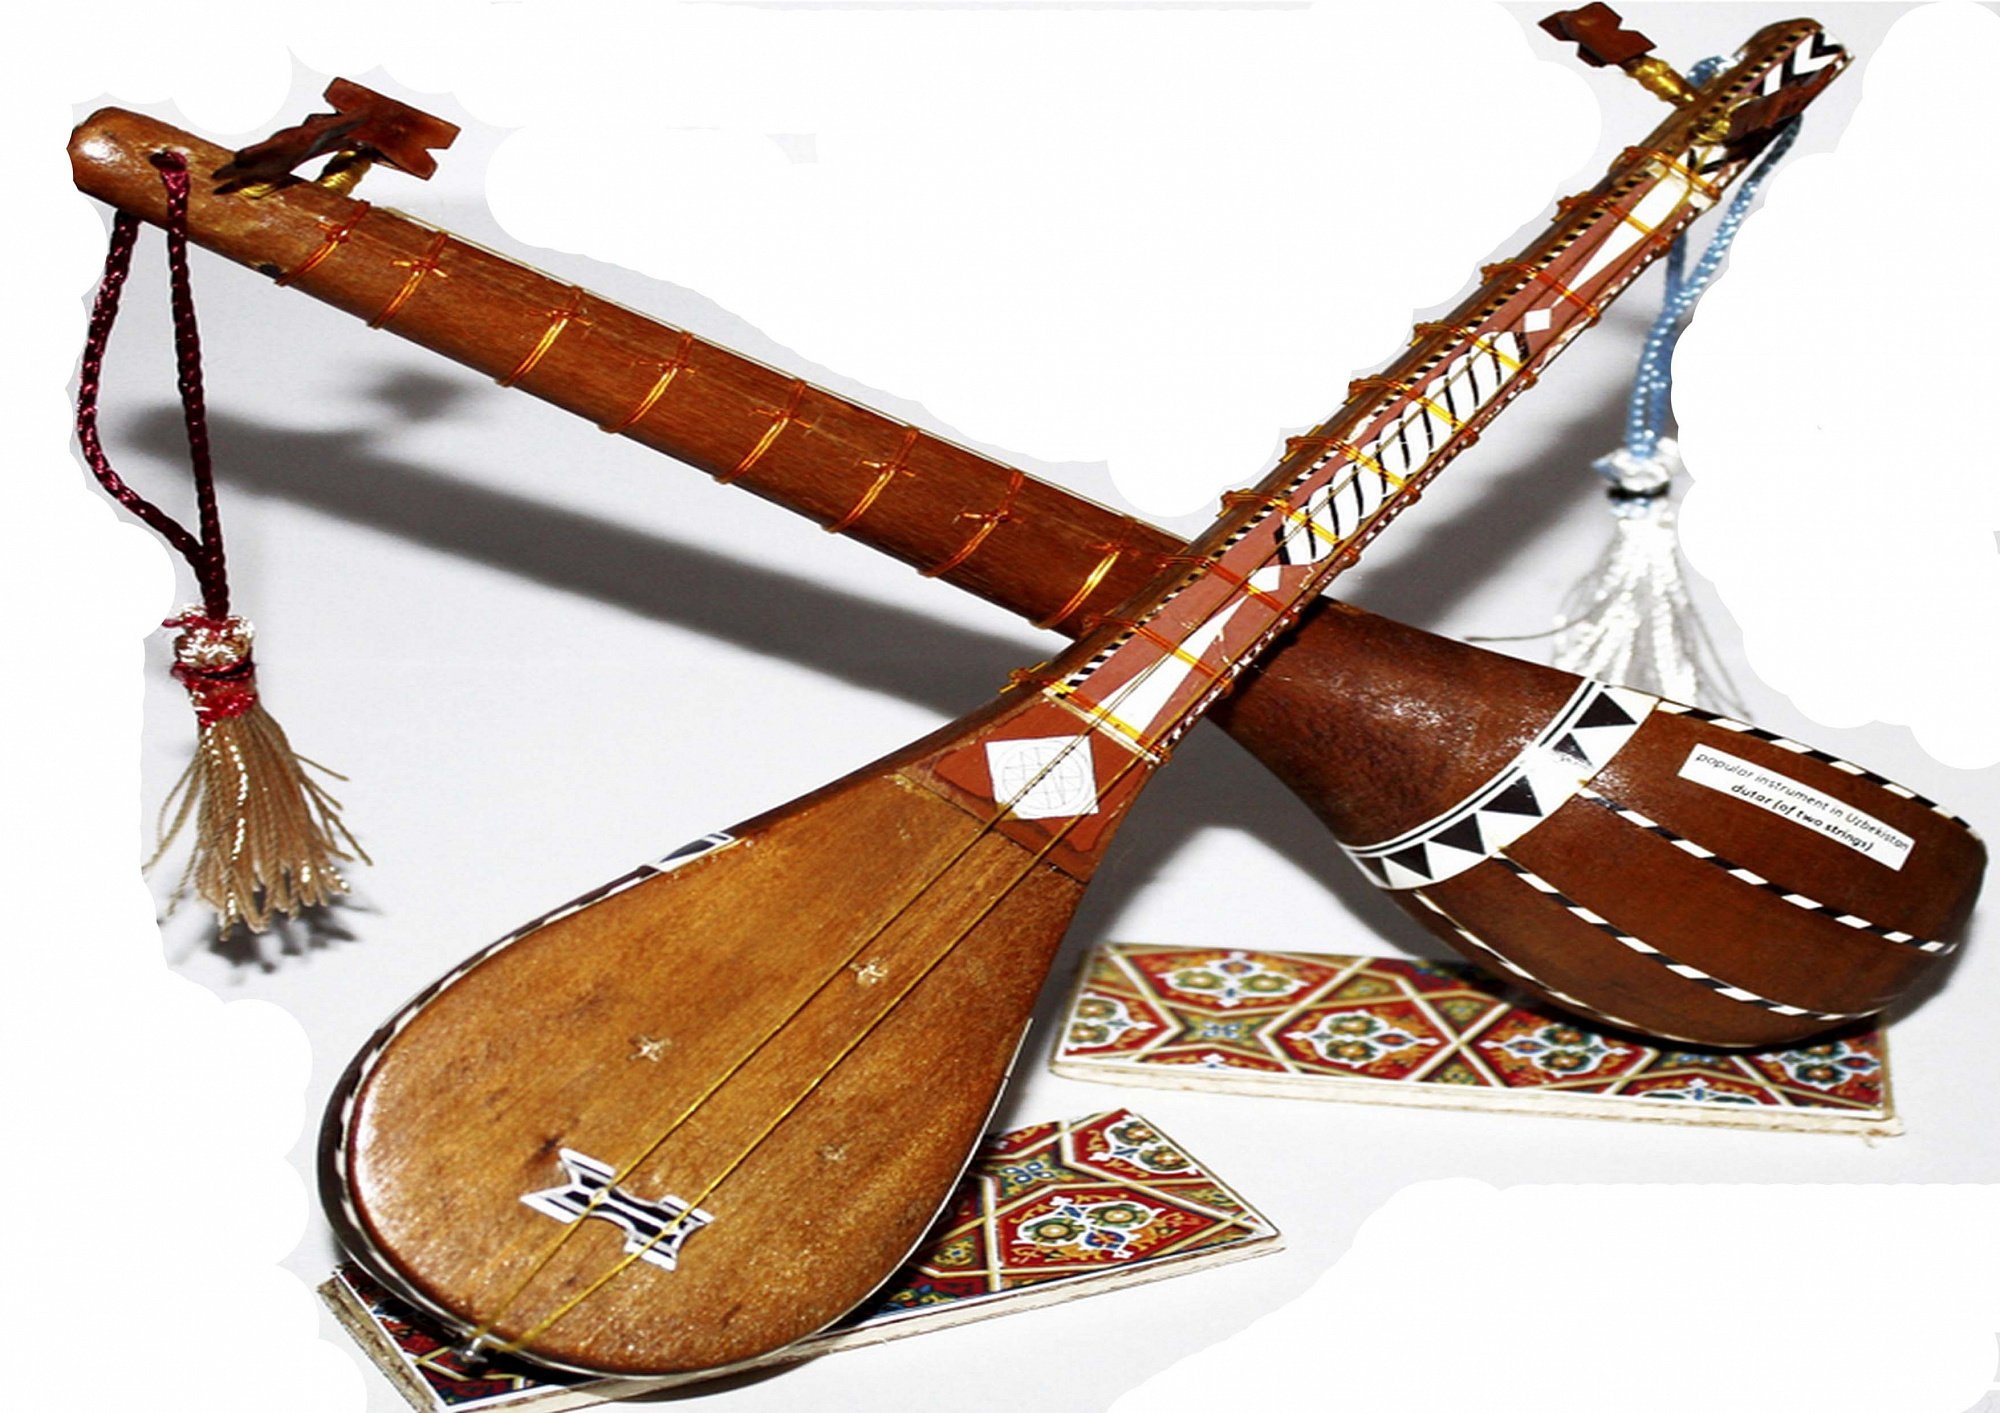 Таджикский инструмент. Дутар музыкальный инструмент. Туркменский дутар музыкальный инструмент. Узбекский инструмент дутар. Узбекские национальные инструменты дутар.